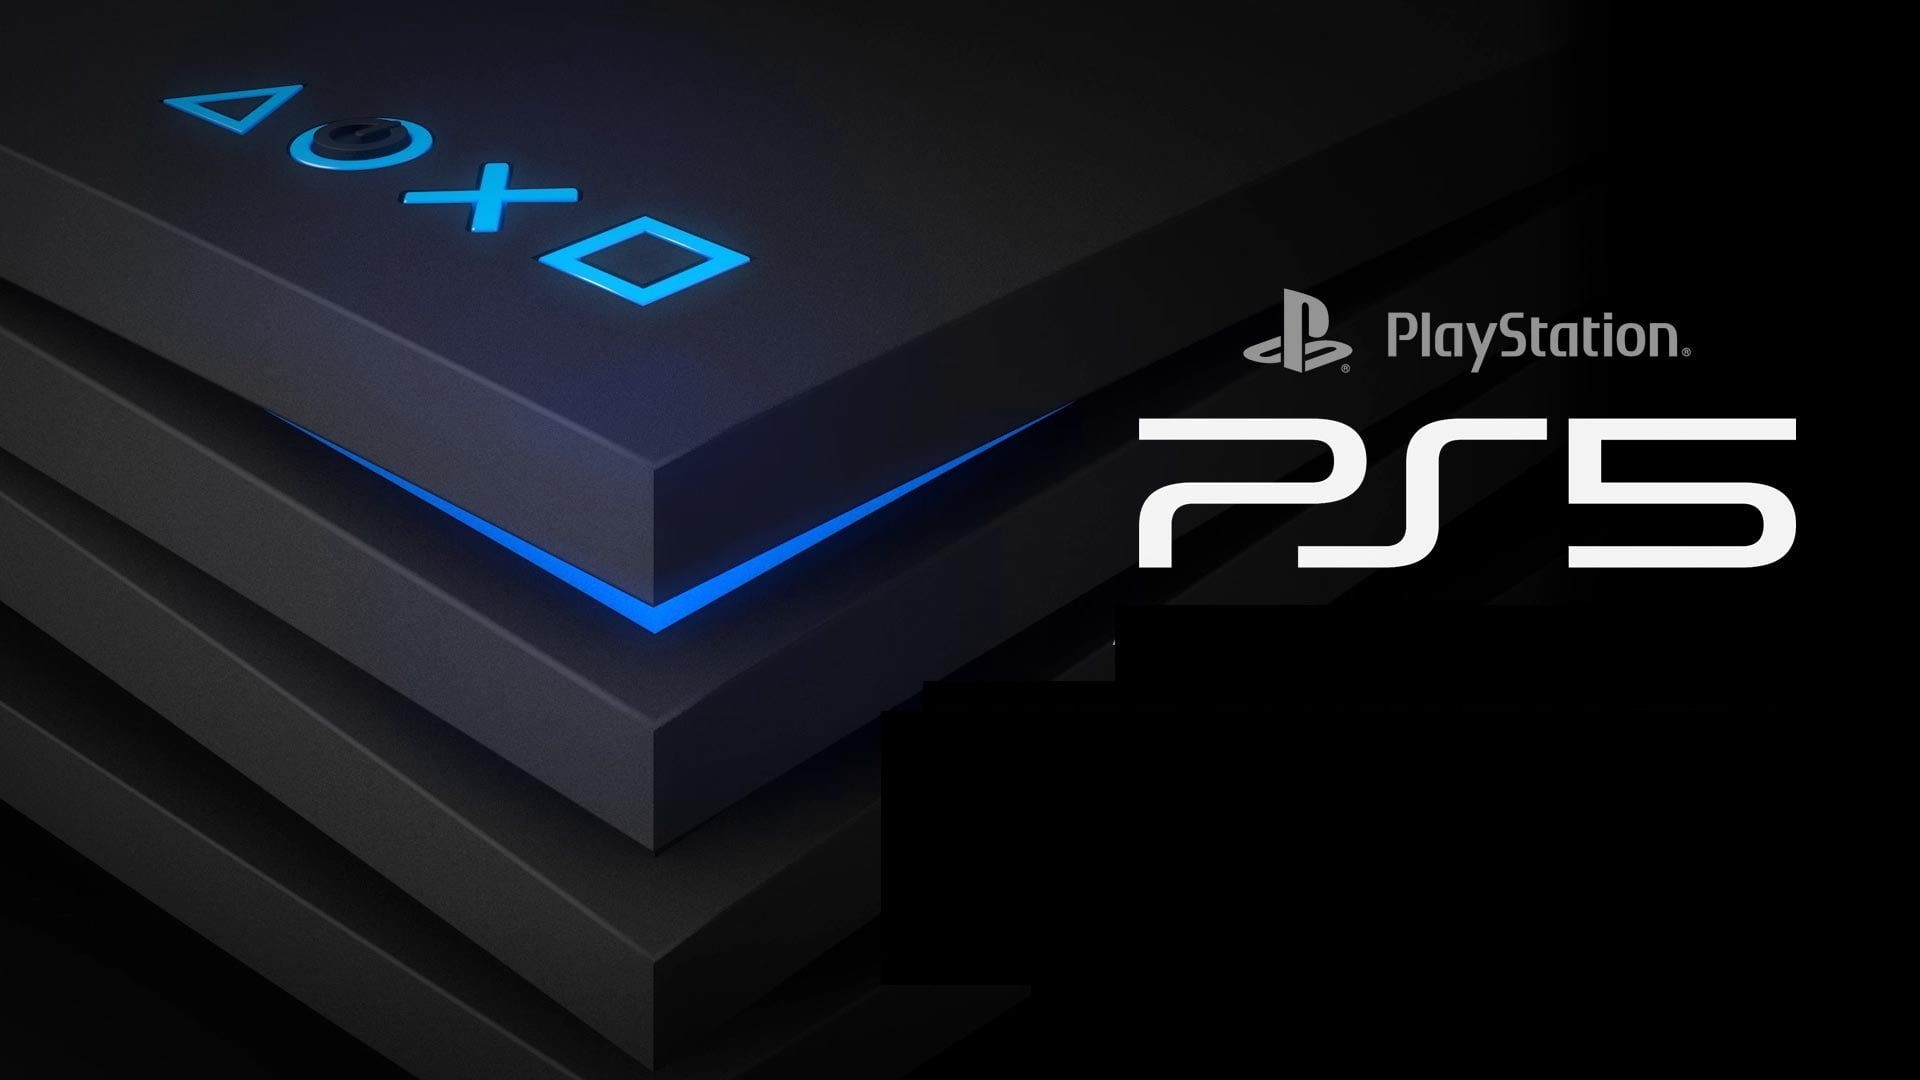 Playstation 5: console terá especificações reveladas amanhã | playstation 5 1 | married games notícias | playstation 5, sony | playstation 5